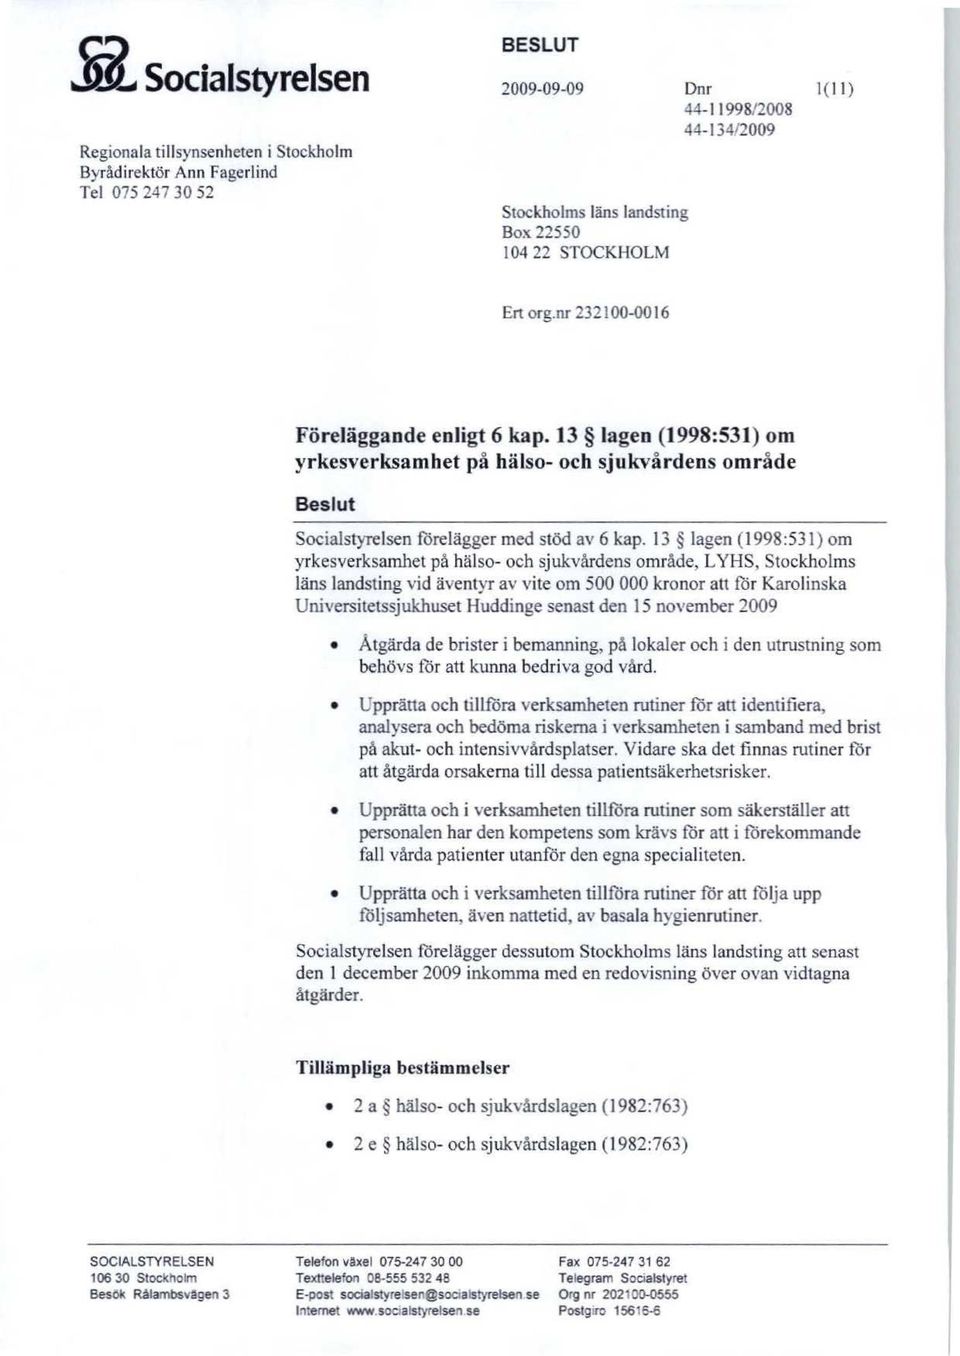 13 lagen (1998:531) om yrkesverksamhet på hälso- och sjukvårdens område, LYHS, Stockholms läns landsting vid äventyr av vite om 500 000 kronor att för Karolinska Universitetssjukhuset Huddinge senast